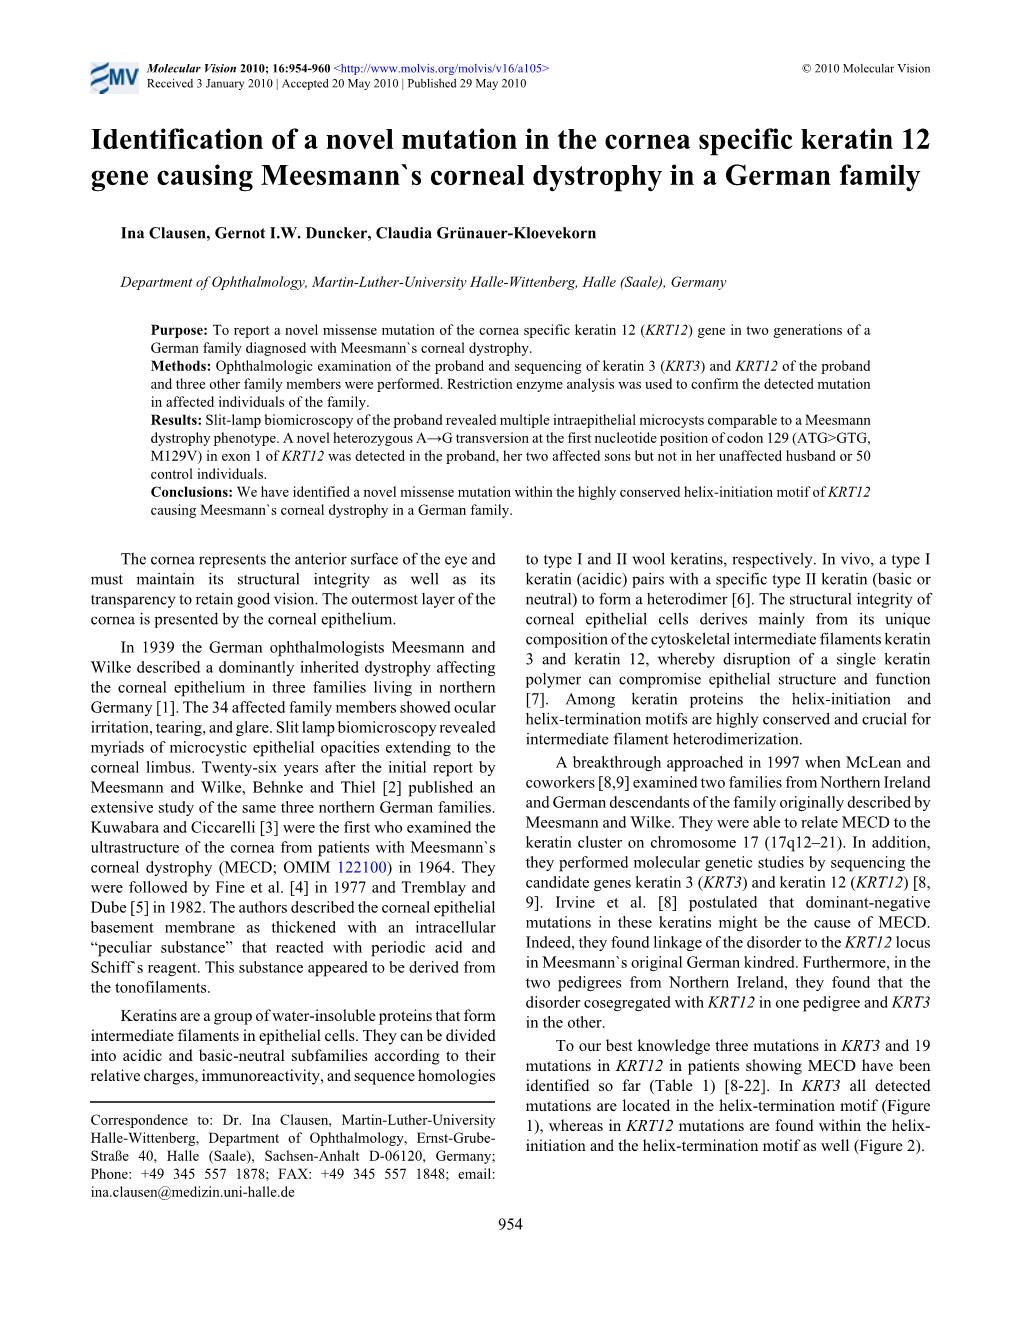 Identification of a Novel Mutation in the Cornea Specific Keratin 12 Gene Causing Meesmann`S Corneal Dystrophy in a German Family